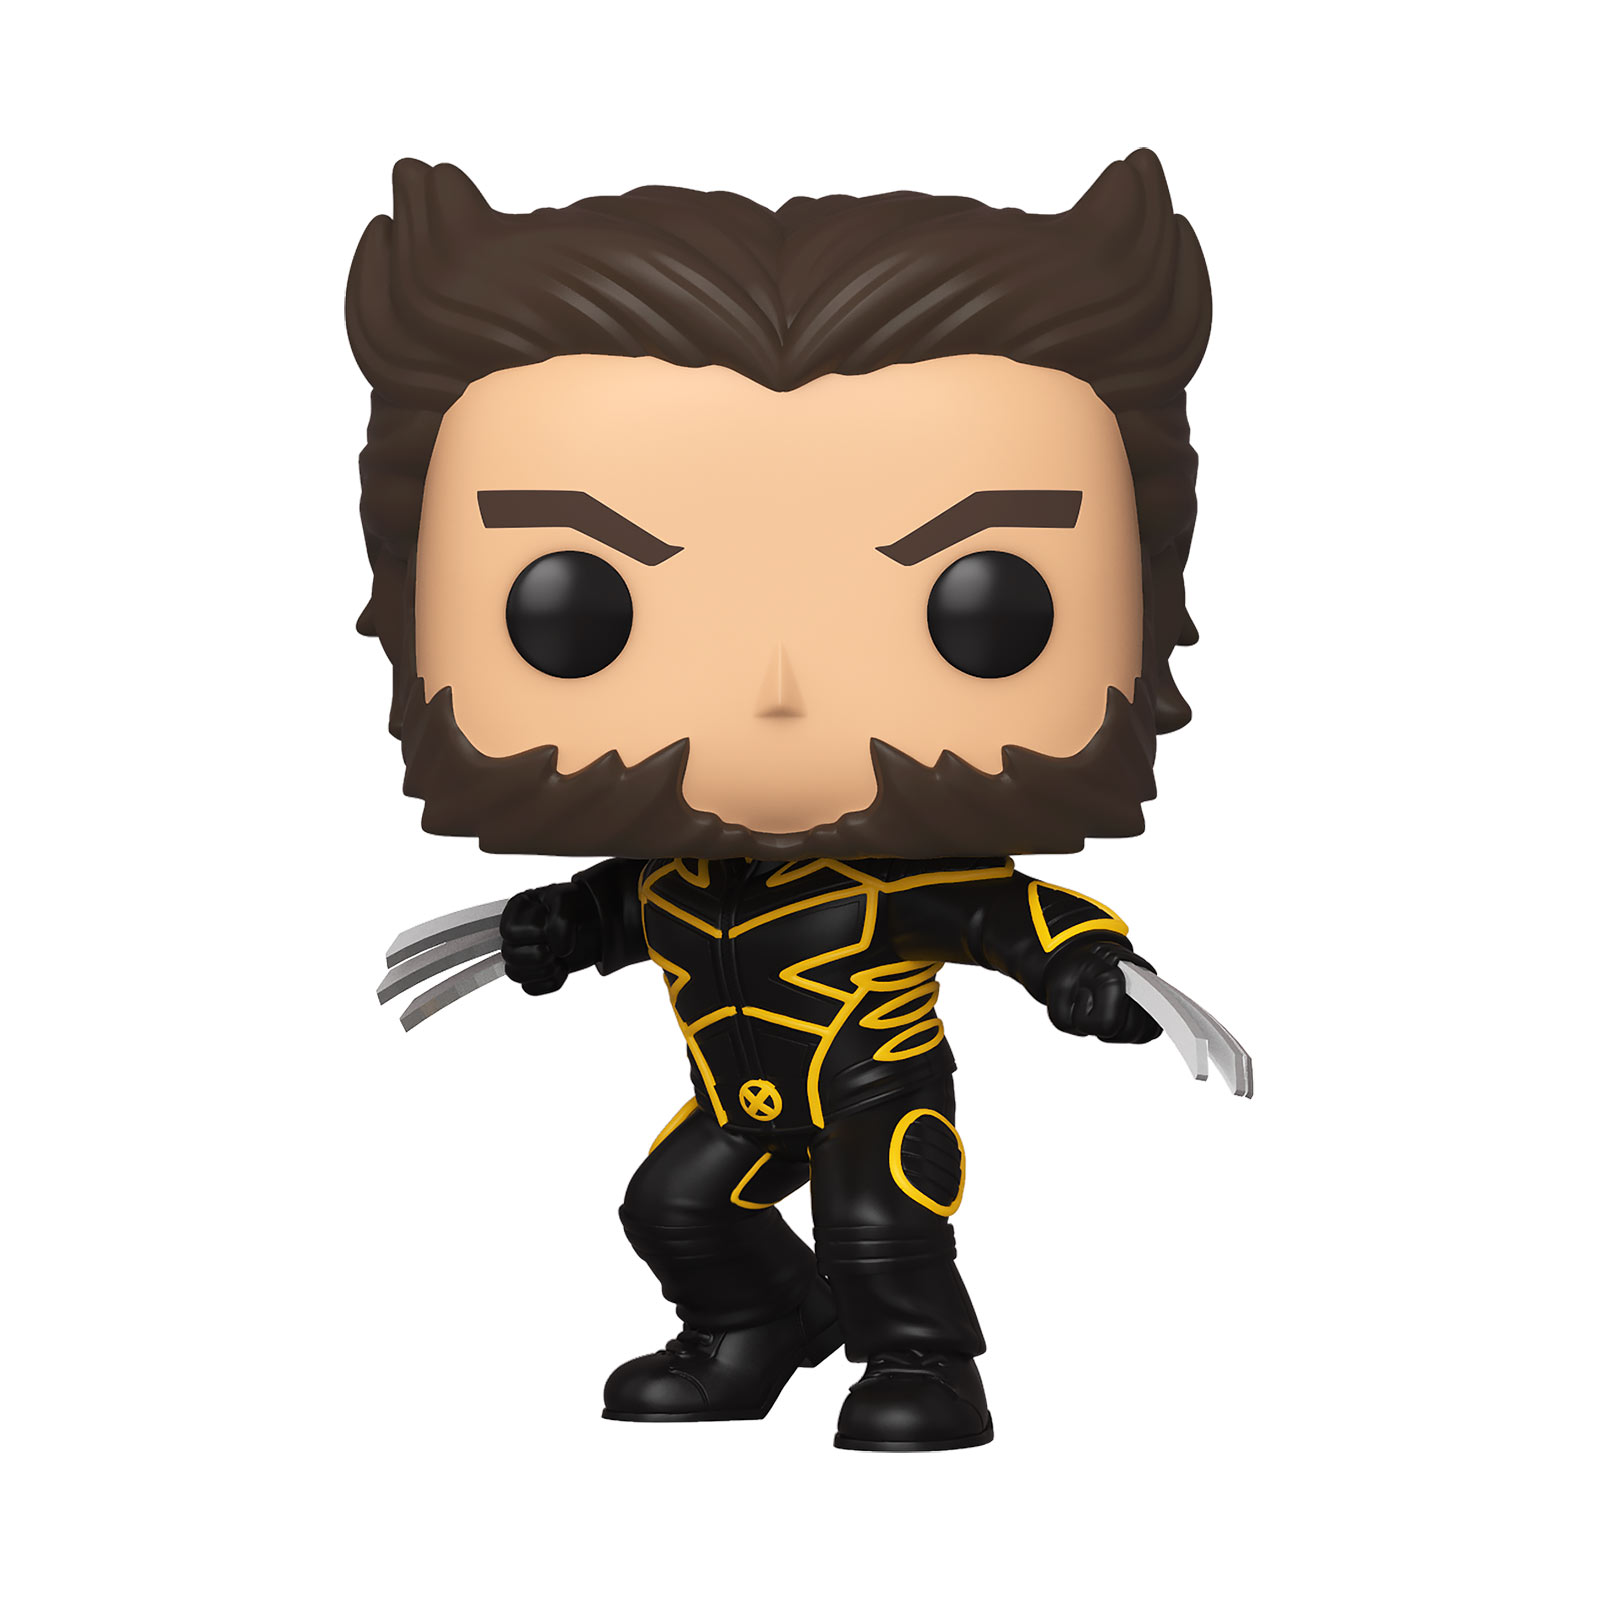 X-Men - Wolverine Funko Pop bobblehead figure